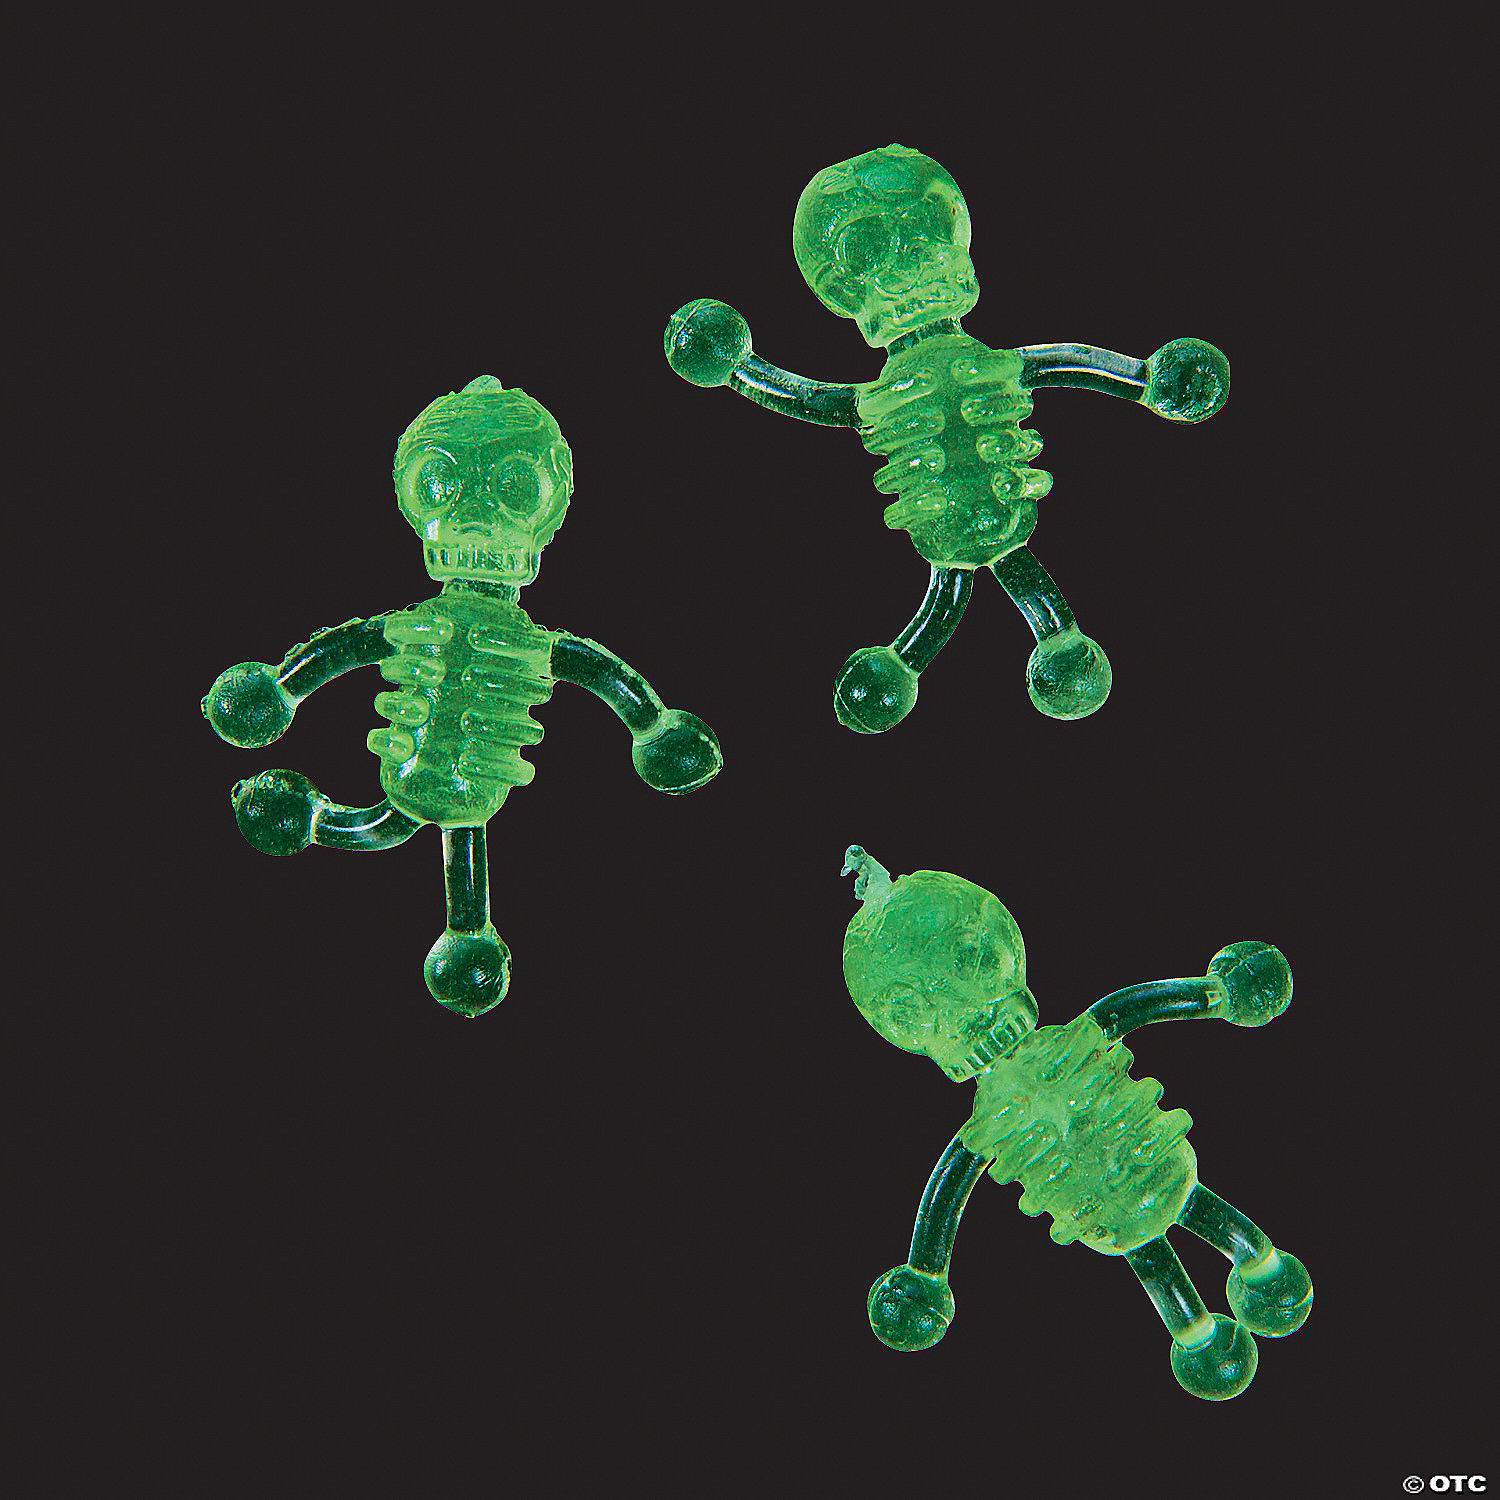 Eigenwijs Vruchtbaar Wederzijds Bulk 48 Pc. Glow-in-the-Dark Mini Sticky Tumbling Skeletons